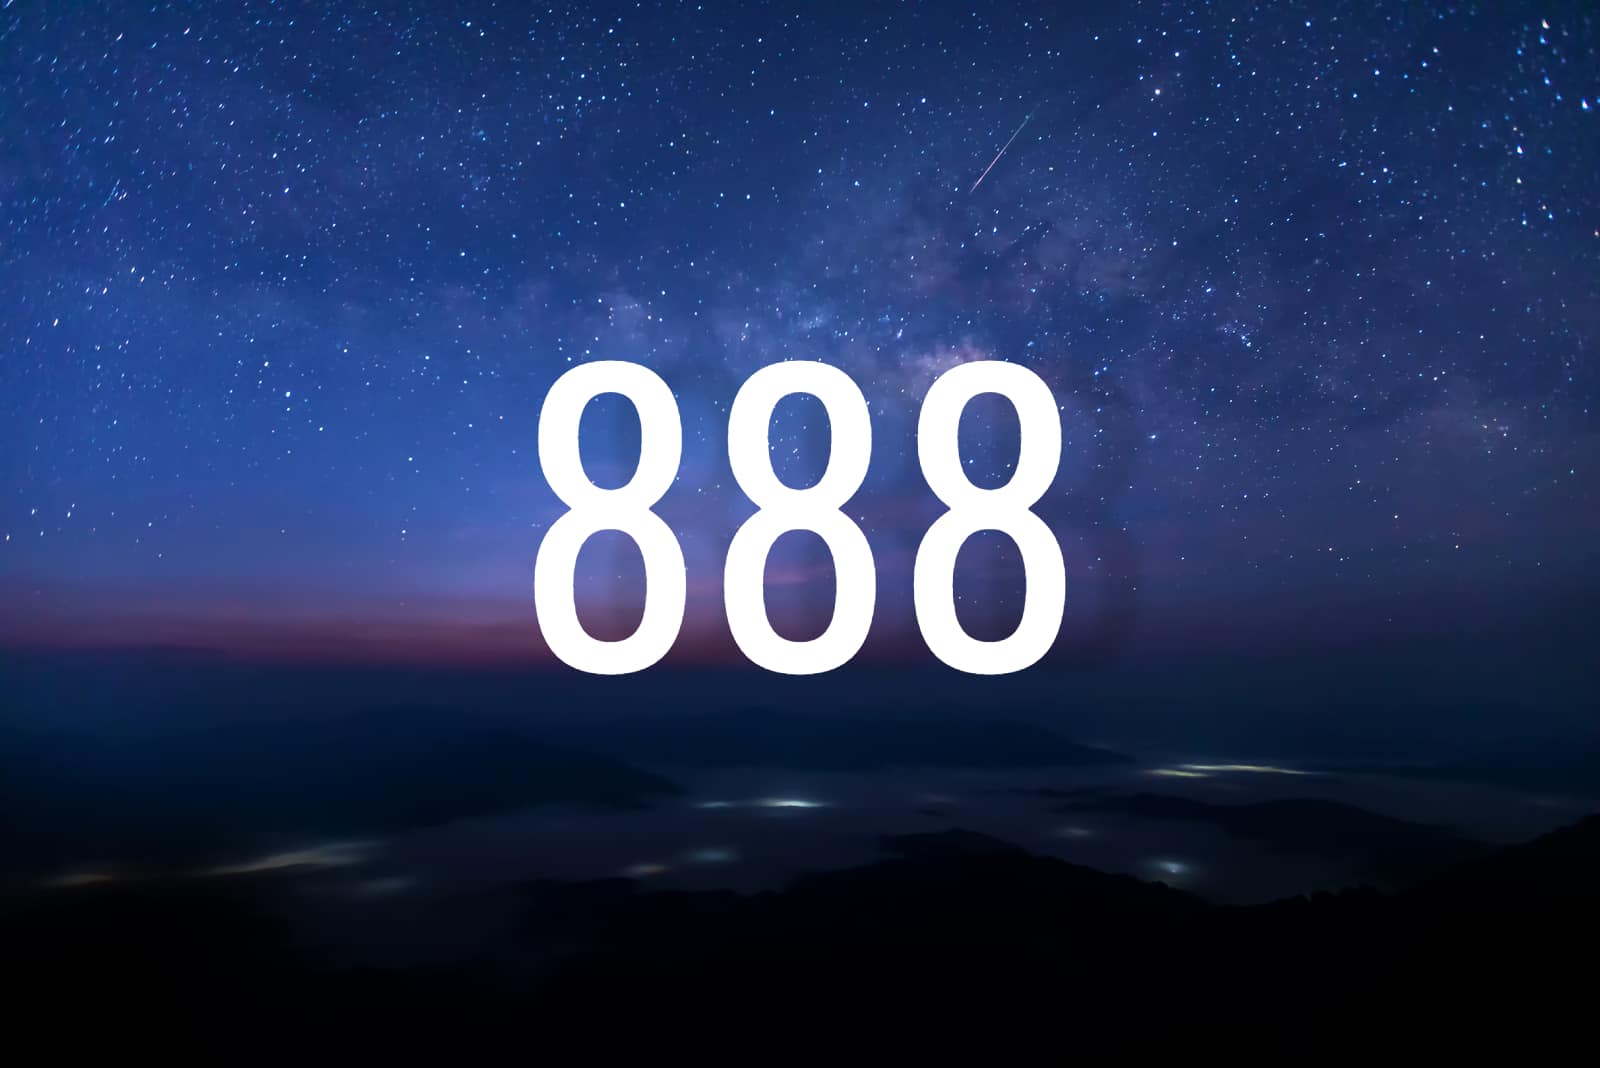 888 nummer bedeutung